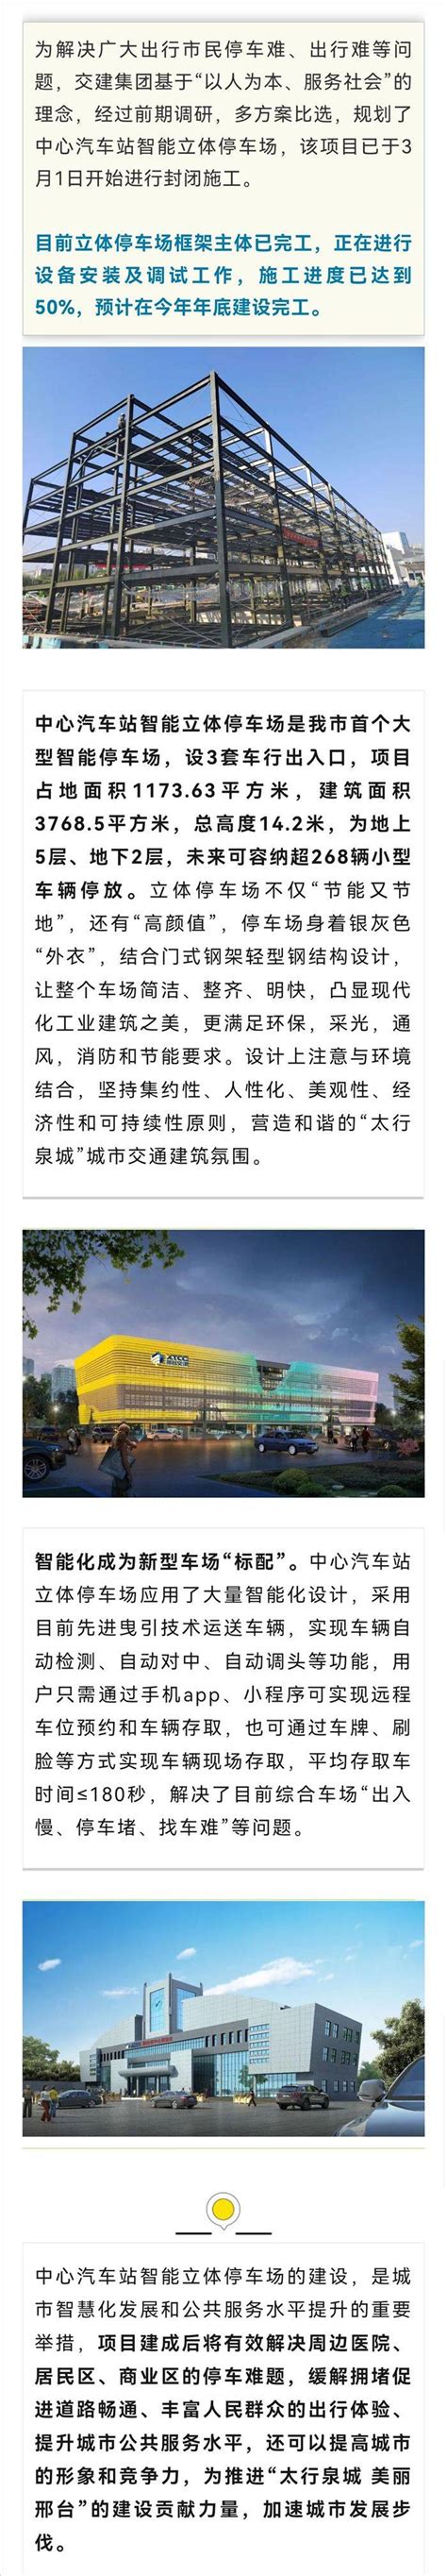 邢台123：画面曝光！邢台市首个大型智能停车场最新进展！